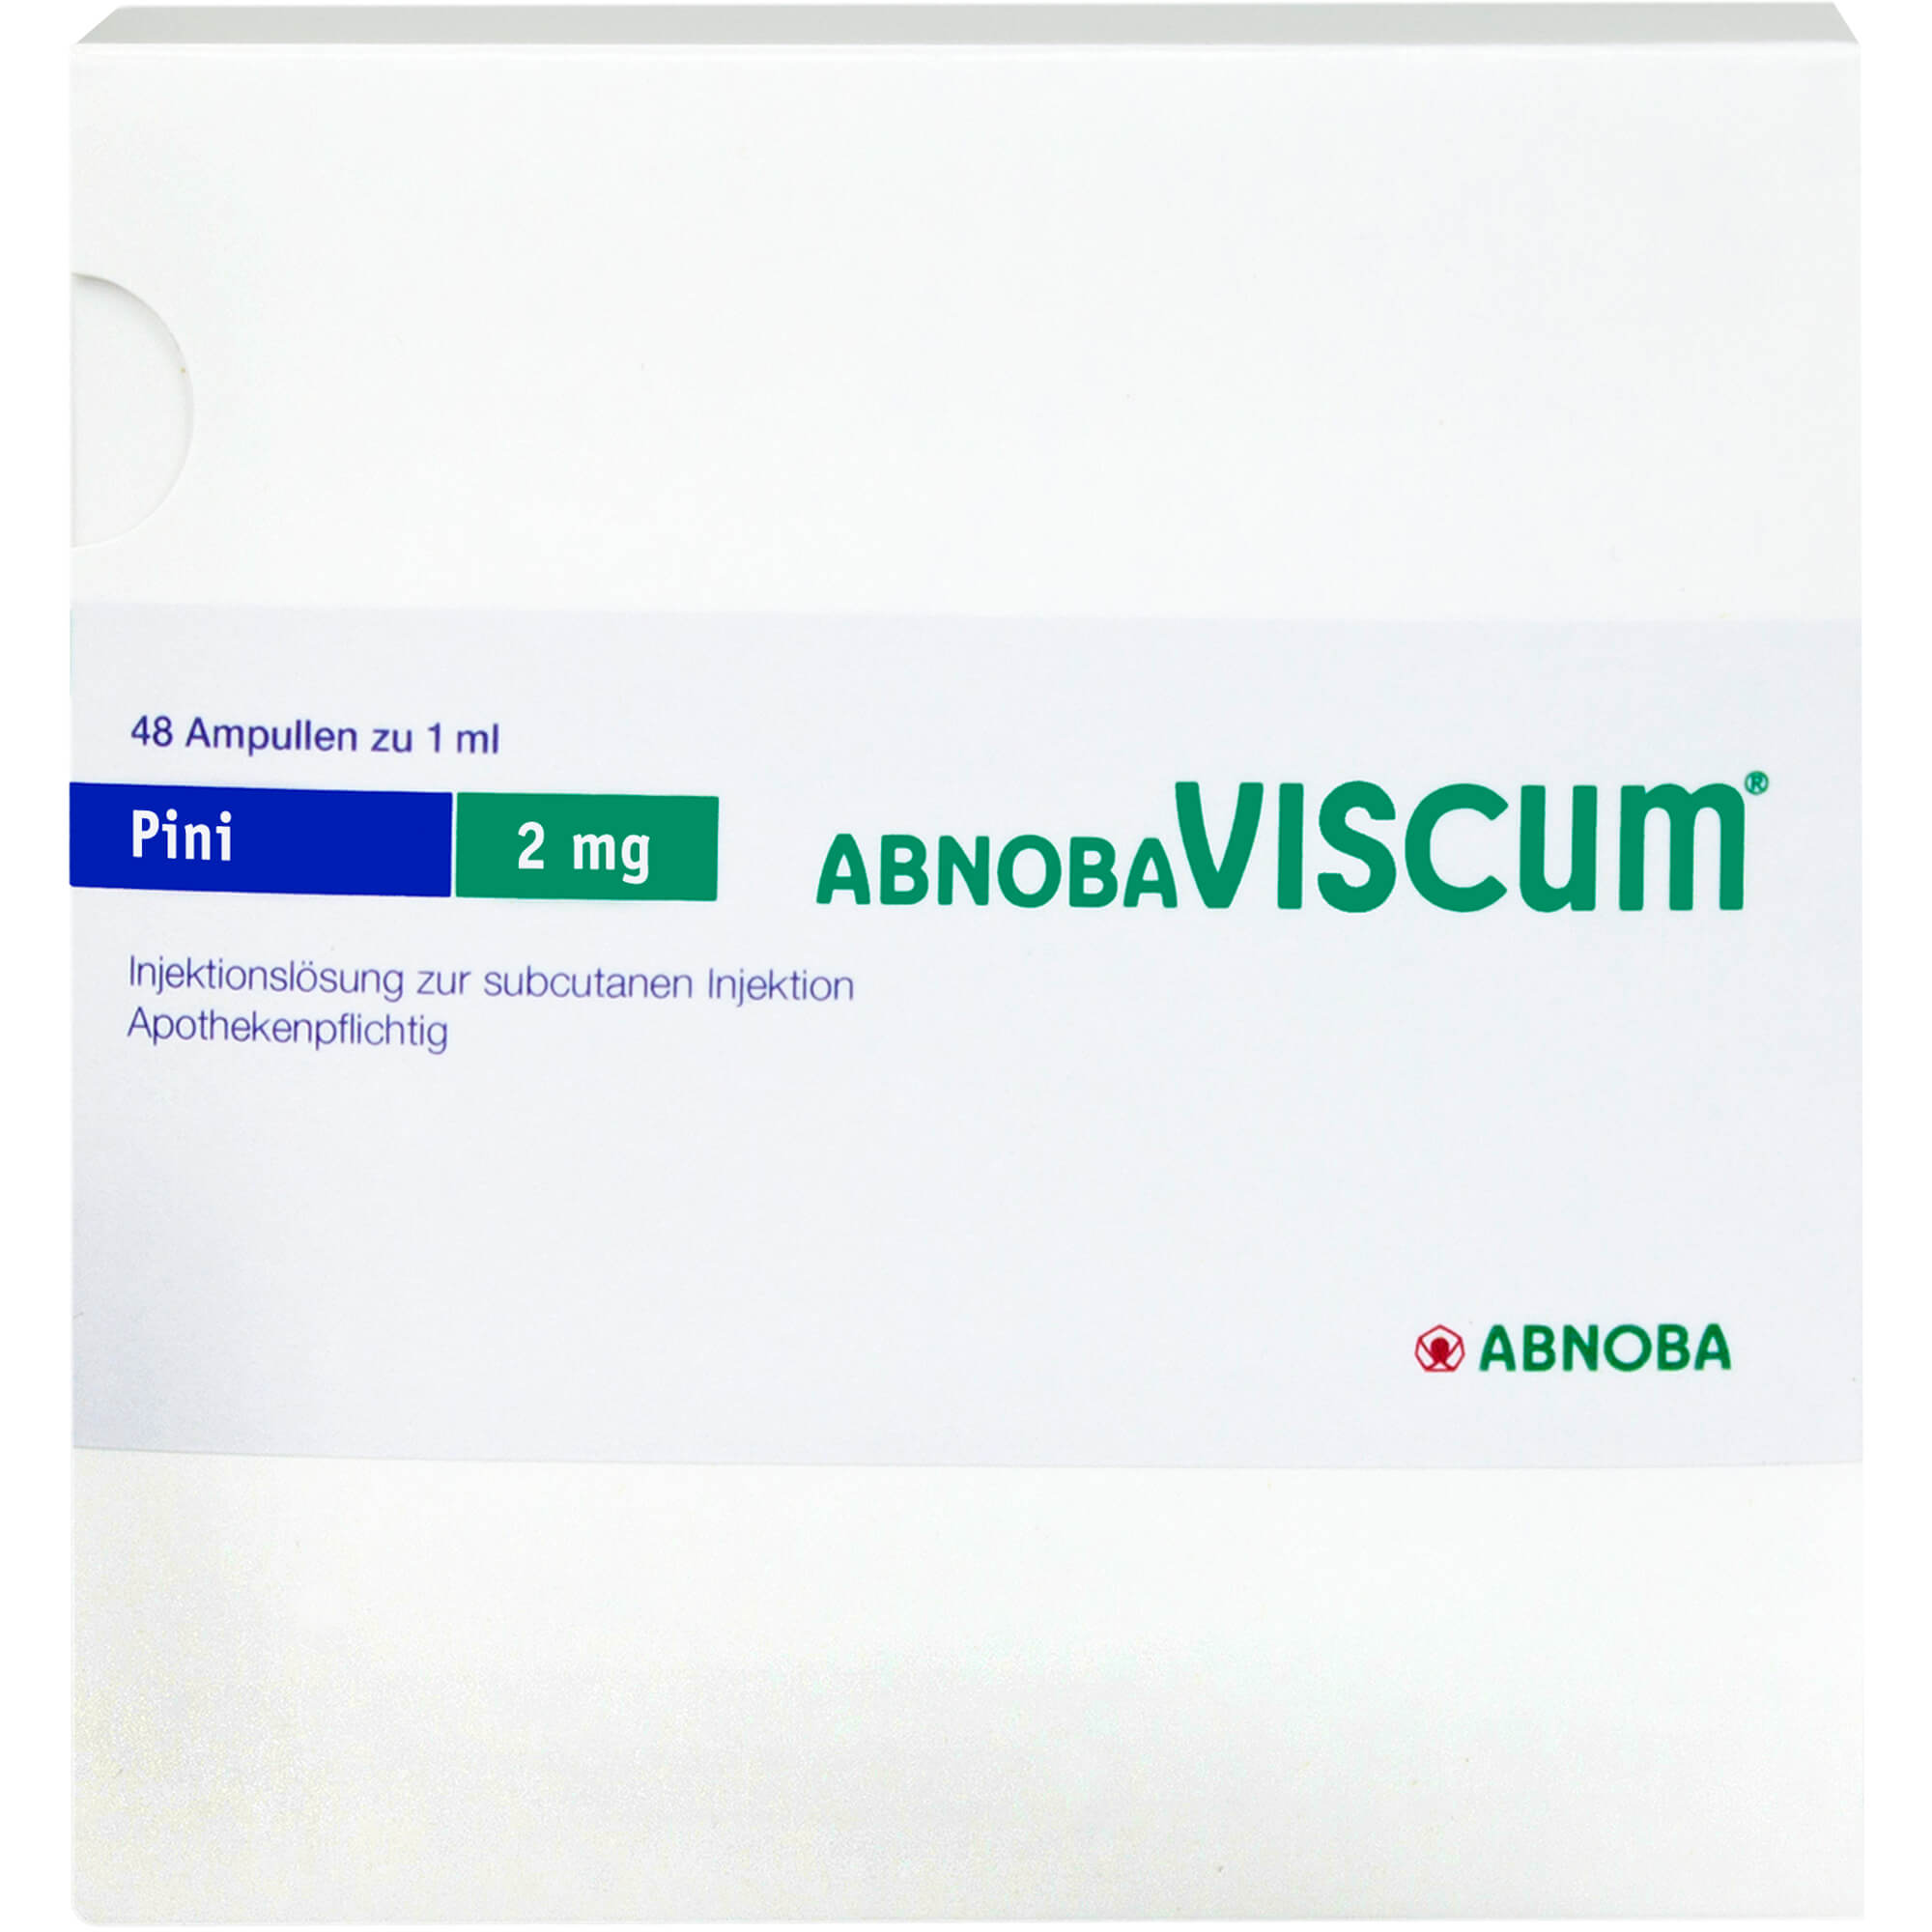 ABNOBAVISCUM Pini 2 mg Ampullen